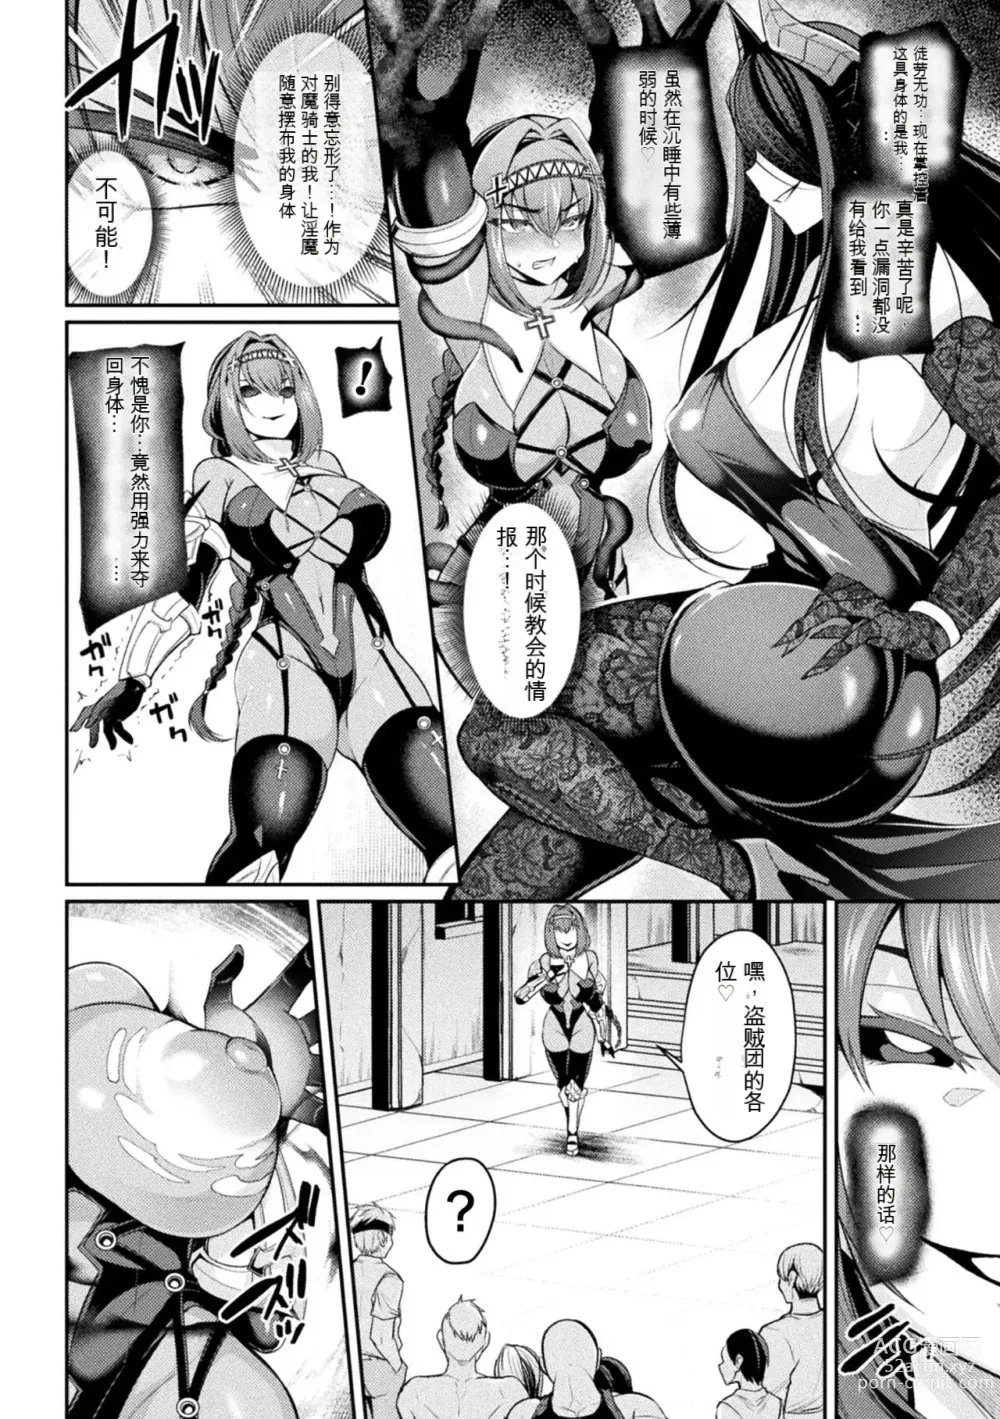 Page 12 of manga Taima Kishi Carla ~A knight fallen in lust~